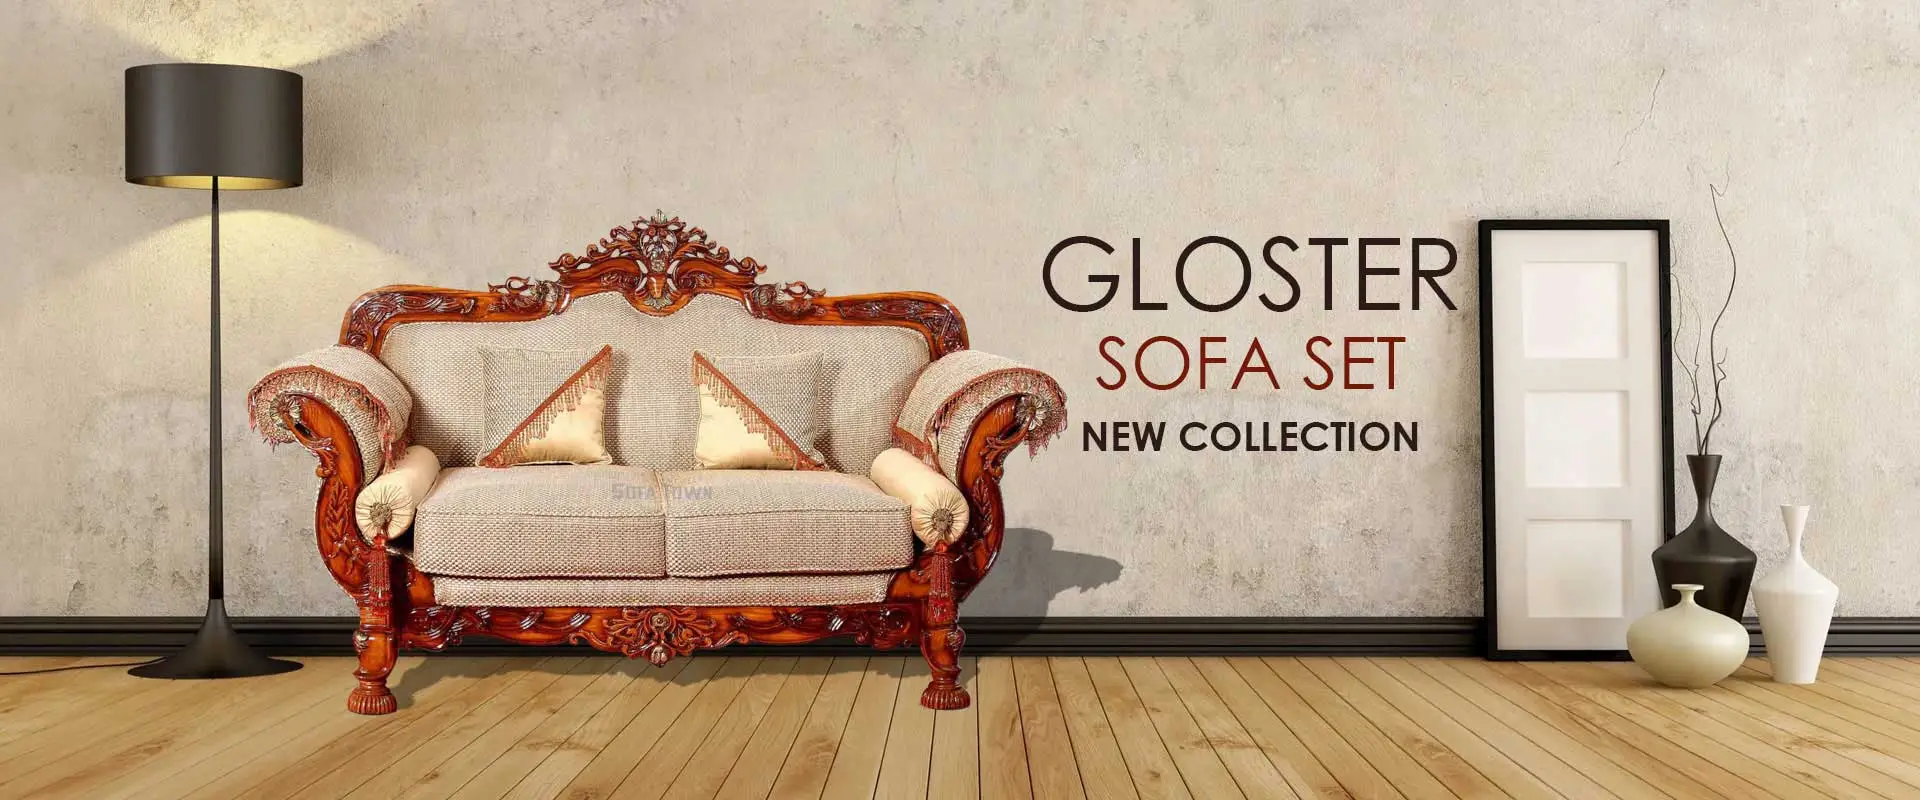 Gloster Sofa Setin Delhi